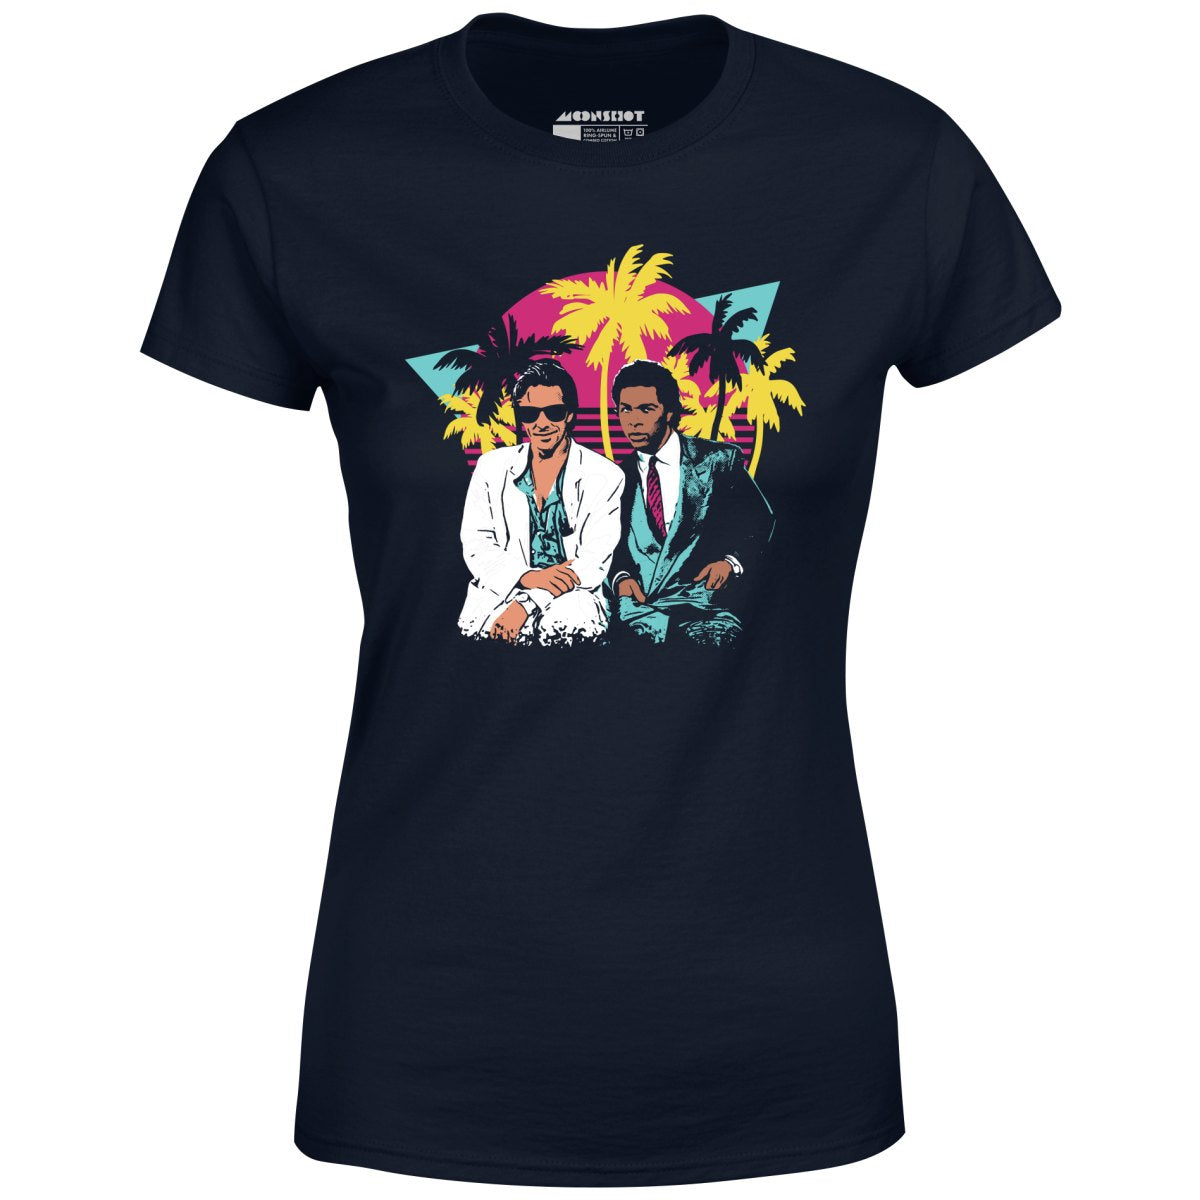 Crockett and Tubbs - Women's T-Shirt